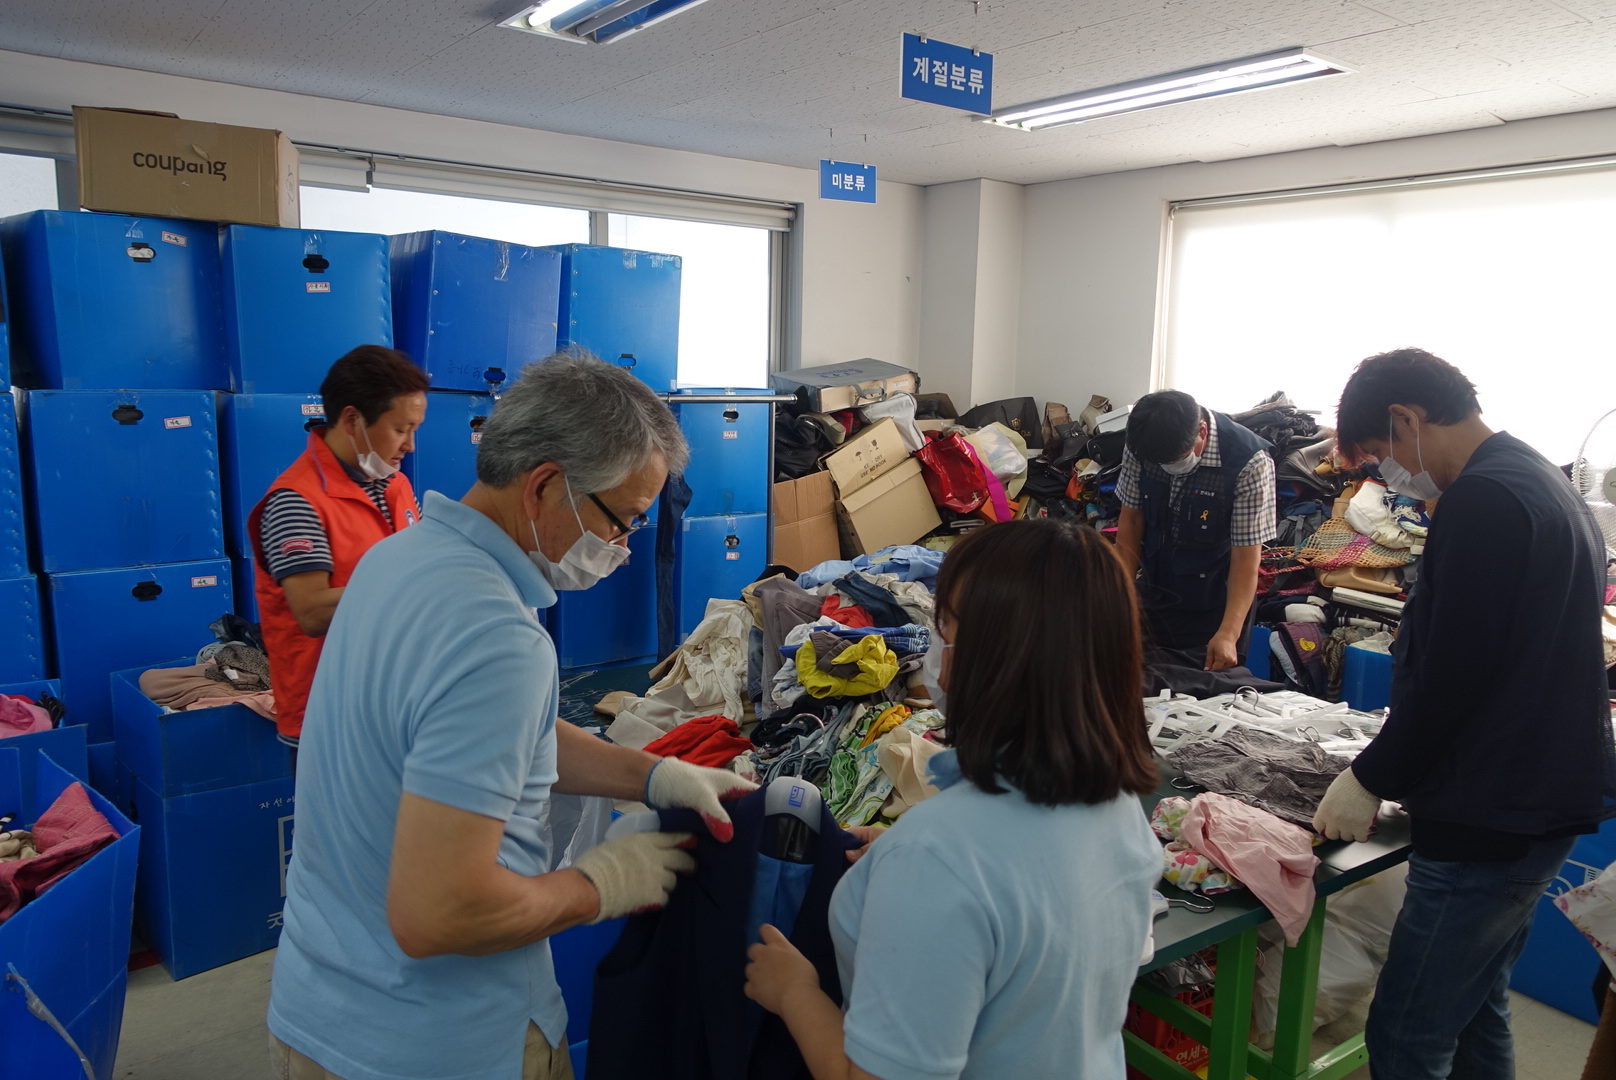 의류 및 물품 분류작업과 매장을 정리하는 인사혁신처관계자와 한국공무원노동조합연맹 회원들